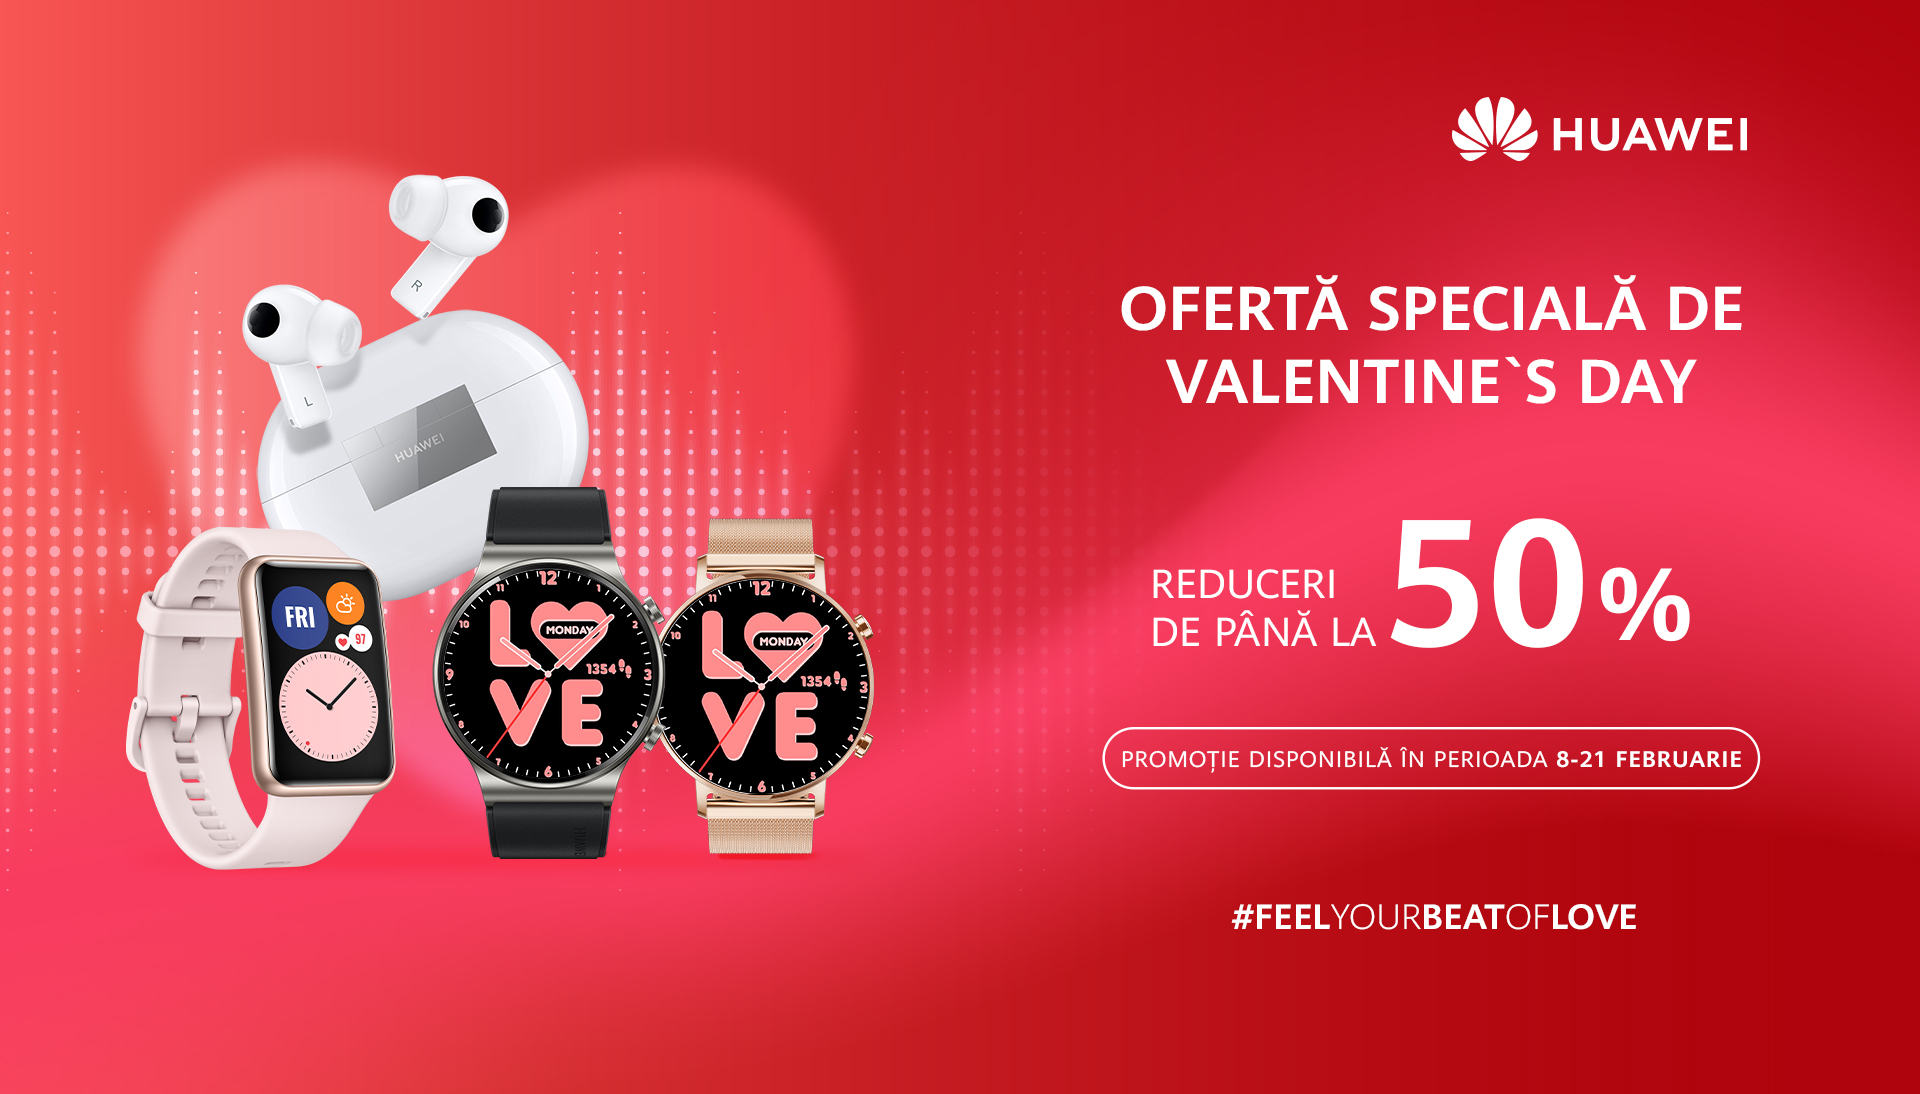 Oferte speciale și servicii gratuite puse la dispoziția utilizatorilor Huawei cu ocazia Valentine’s Day